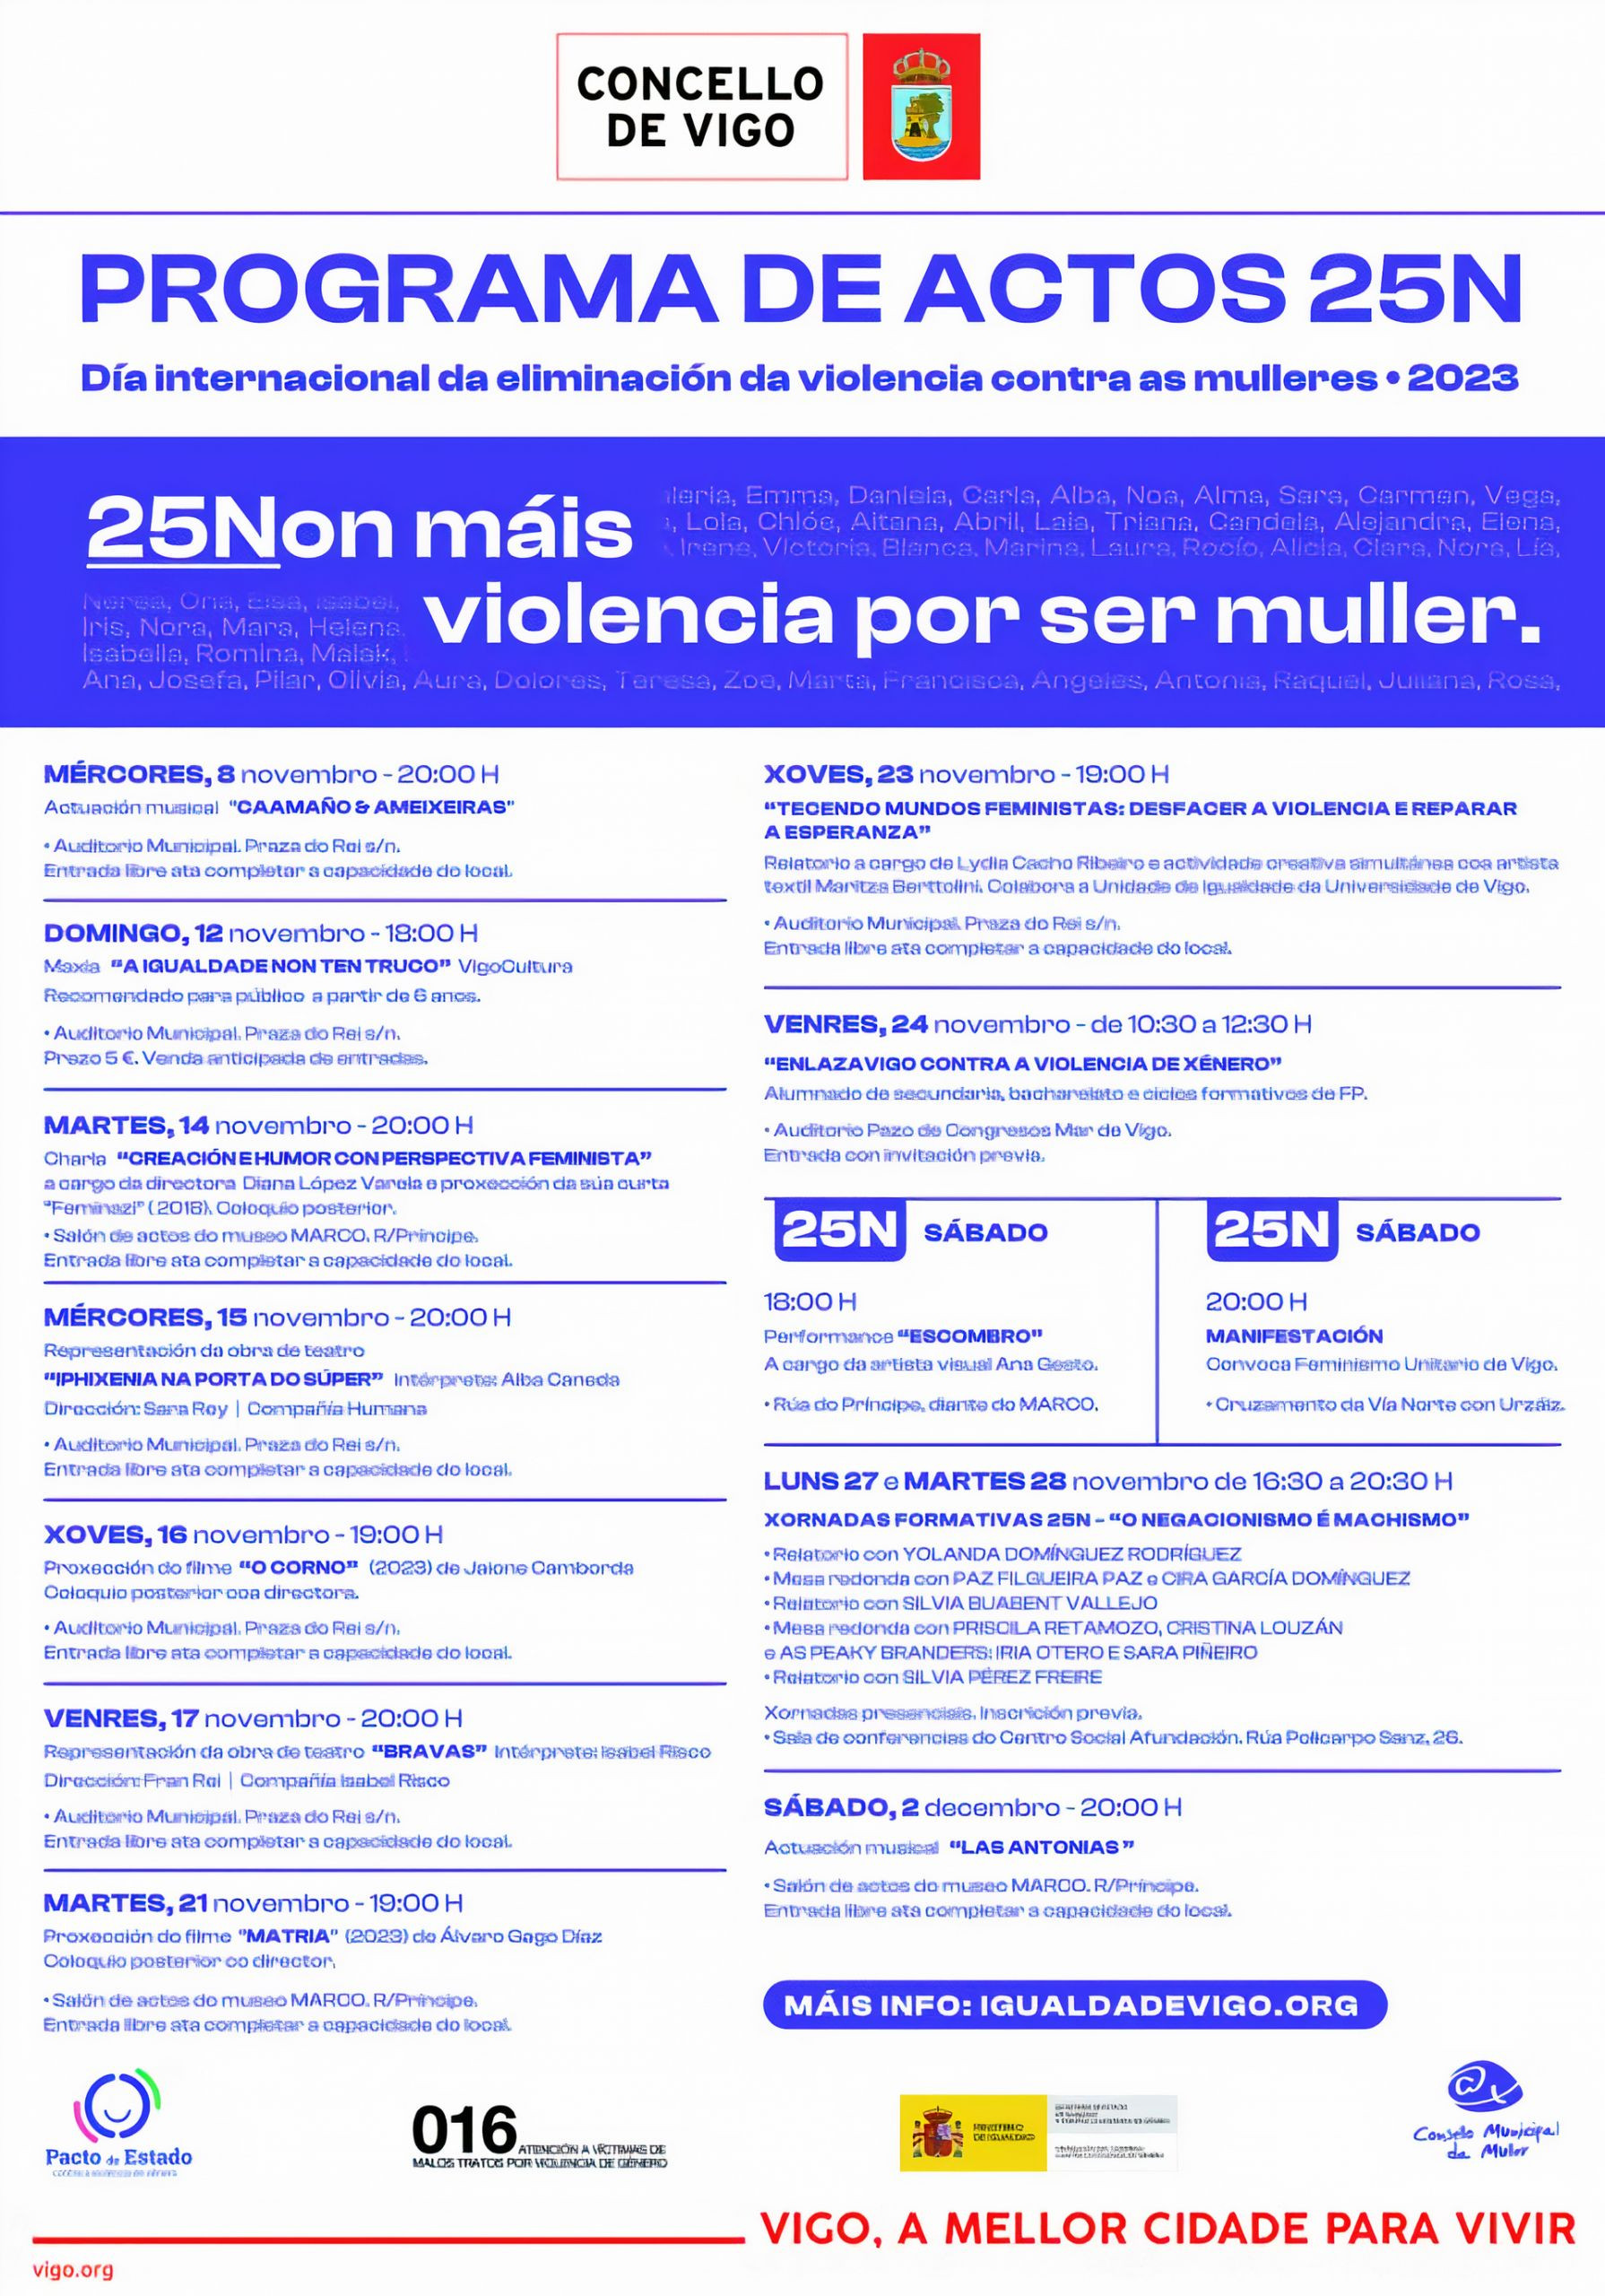 Programa del 25N, no más violencia por ser mujer. Fuente: Concello de Vigo.